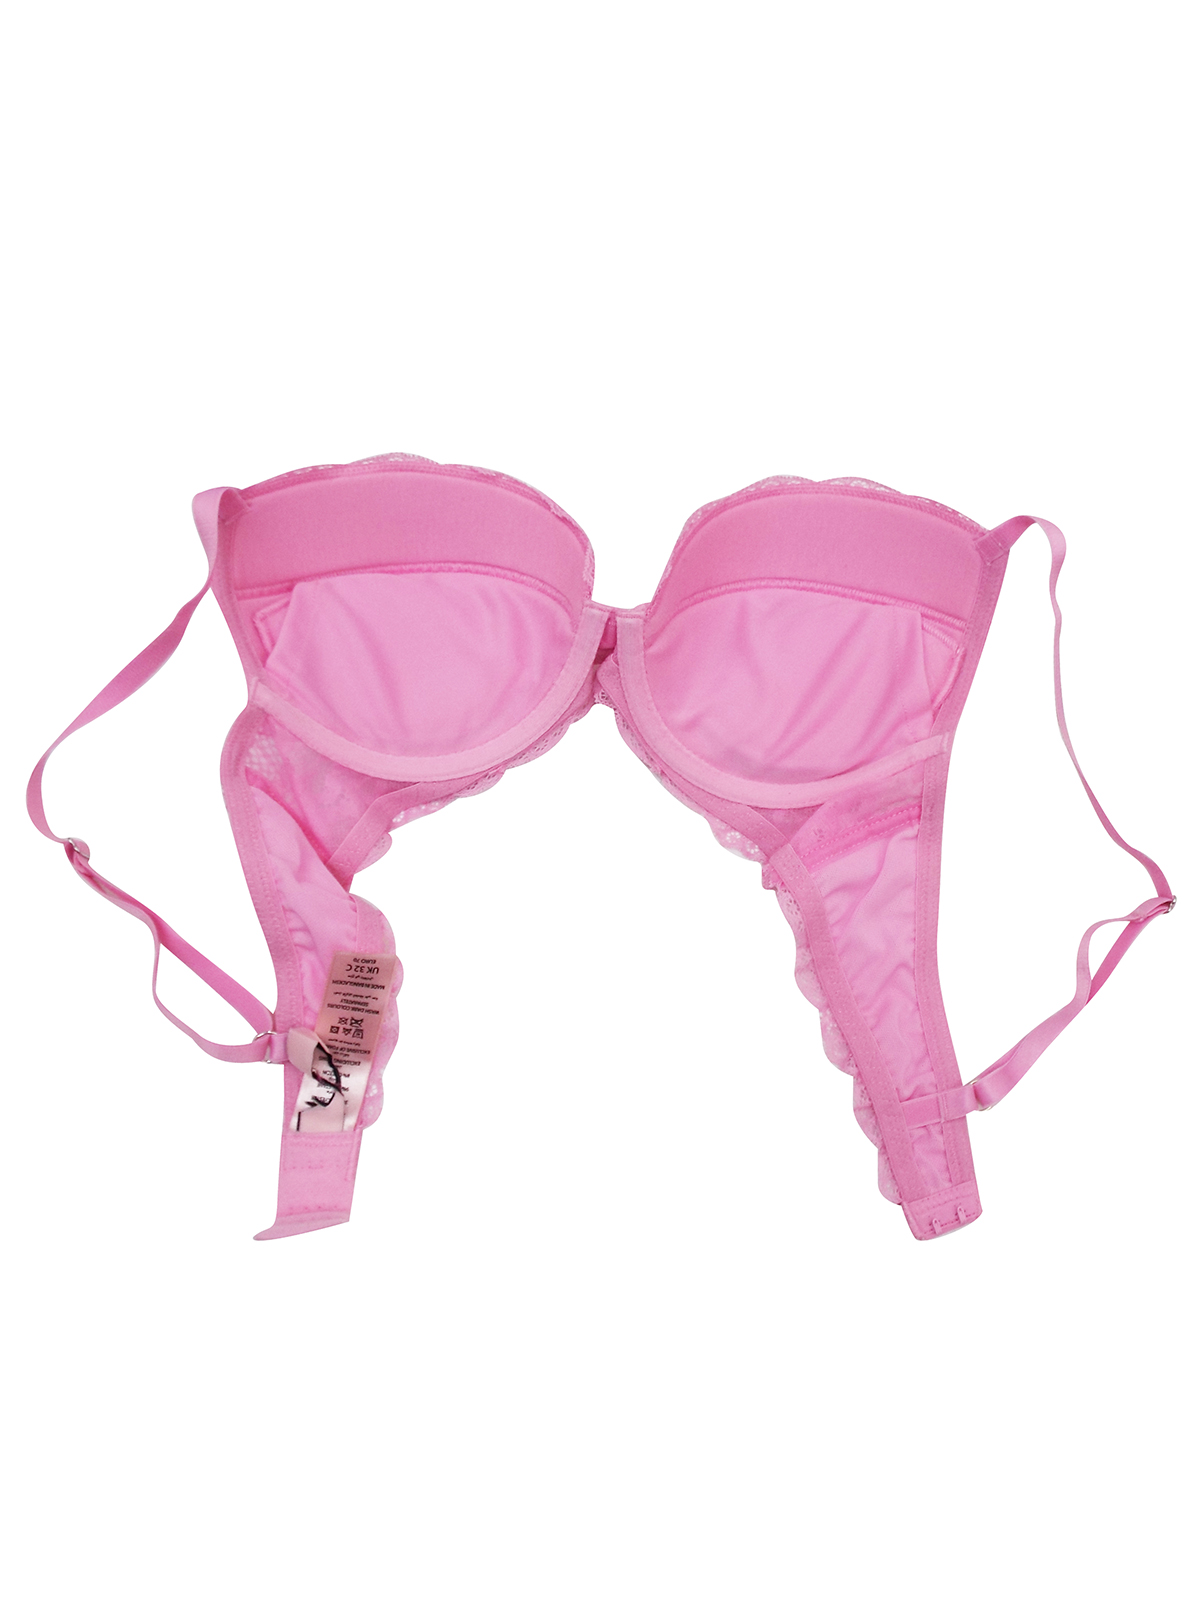 Boux Avenue Mollie plunge bra - Hot Pink - 38D, £28.00